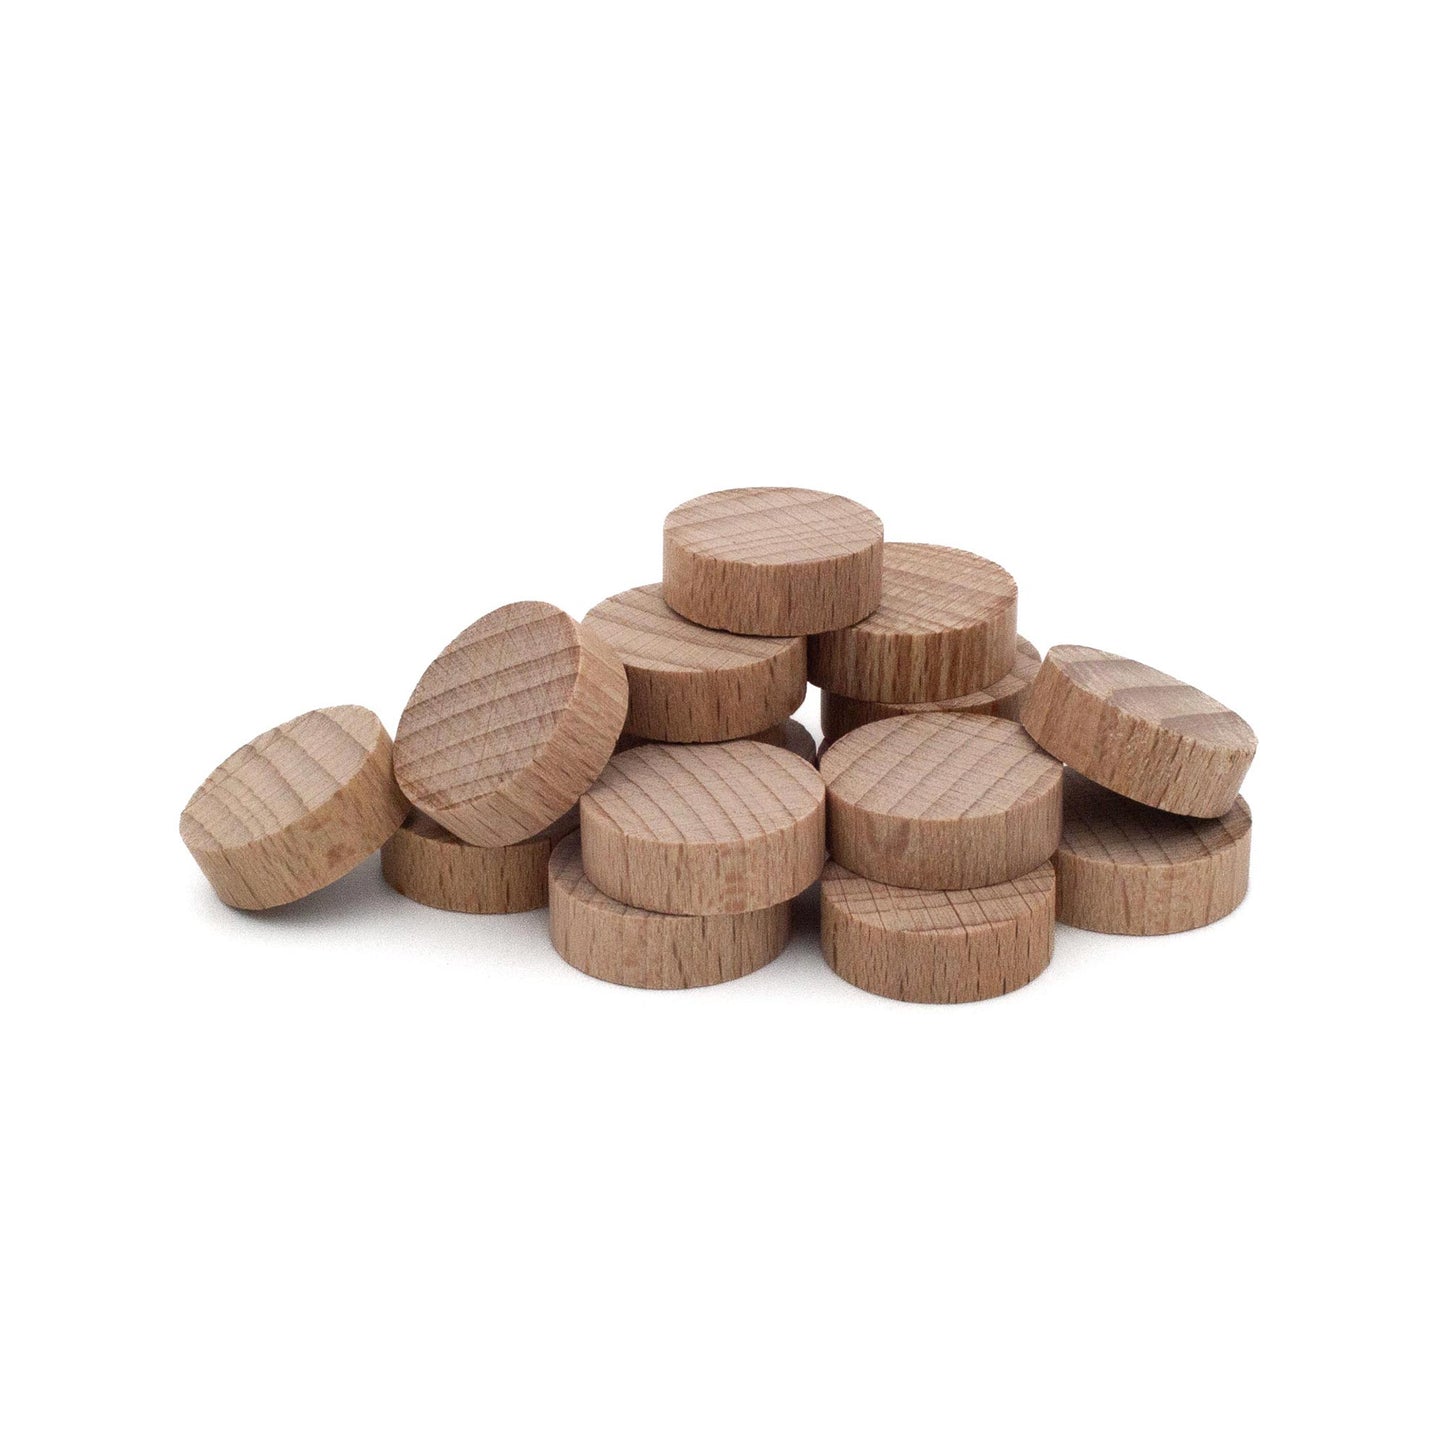 Spieltz Scheiben / Chips 21/7 mm aus Holz, roh / unlackiert